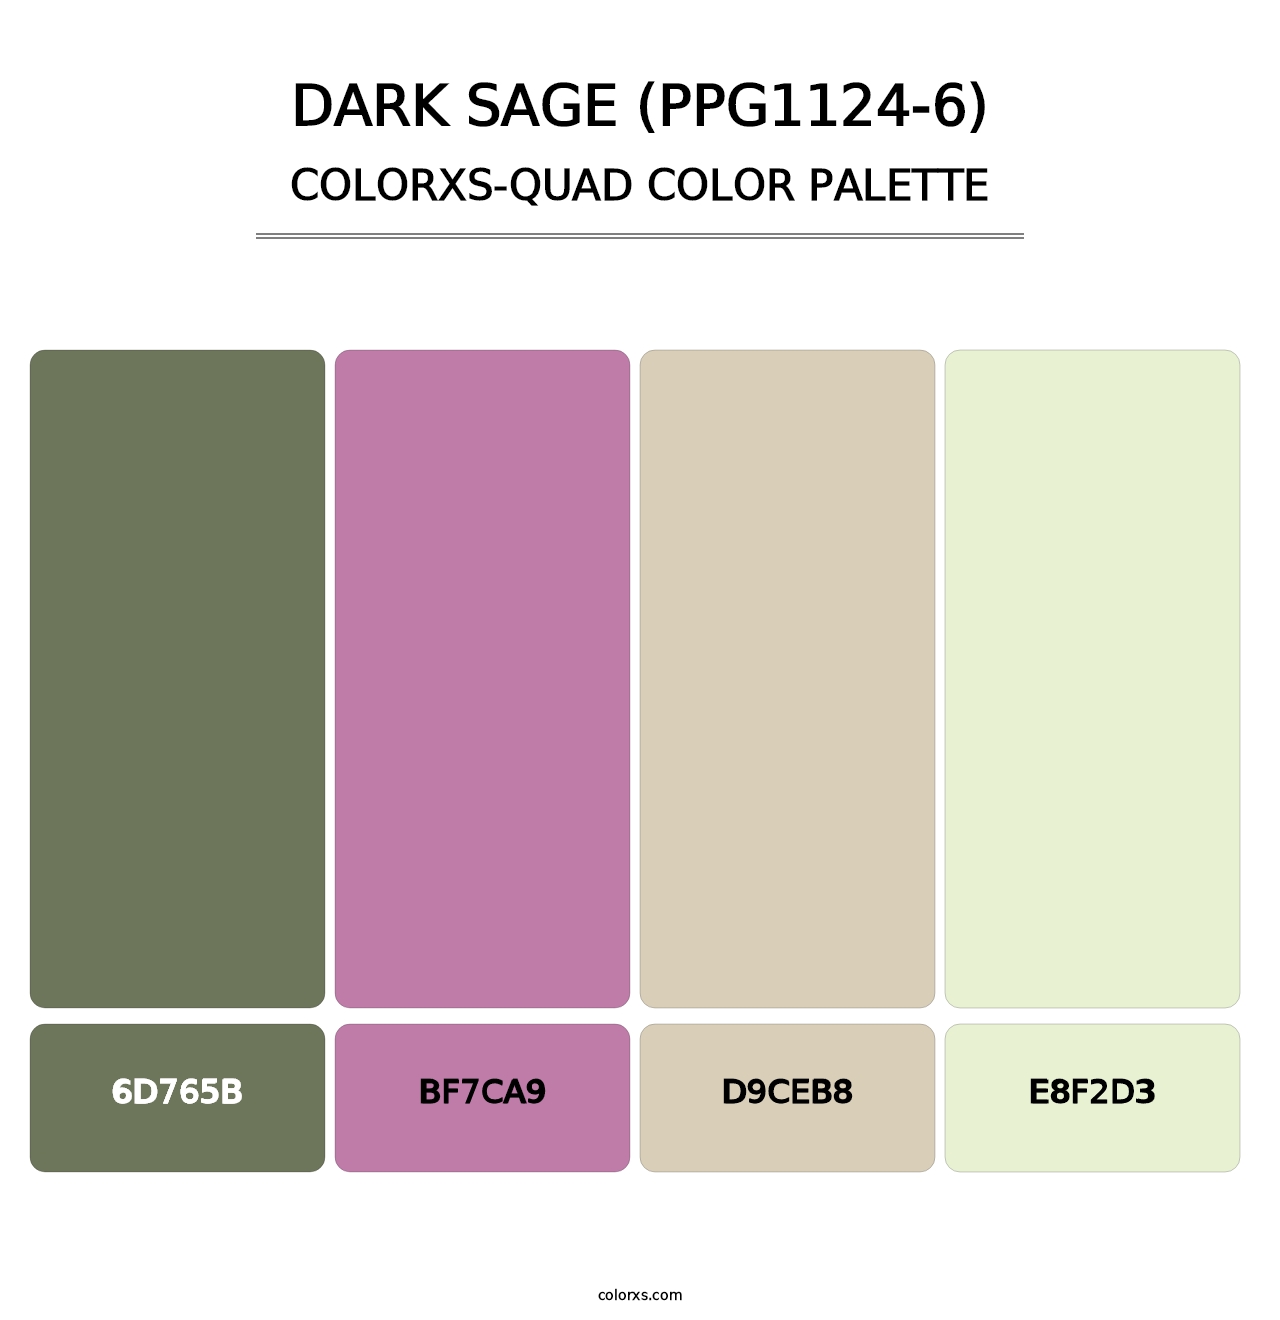 Dark Sage (PPG1124-6) - Colorxs Quad Palette